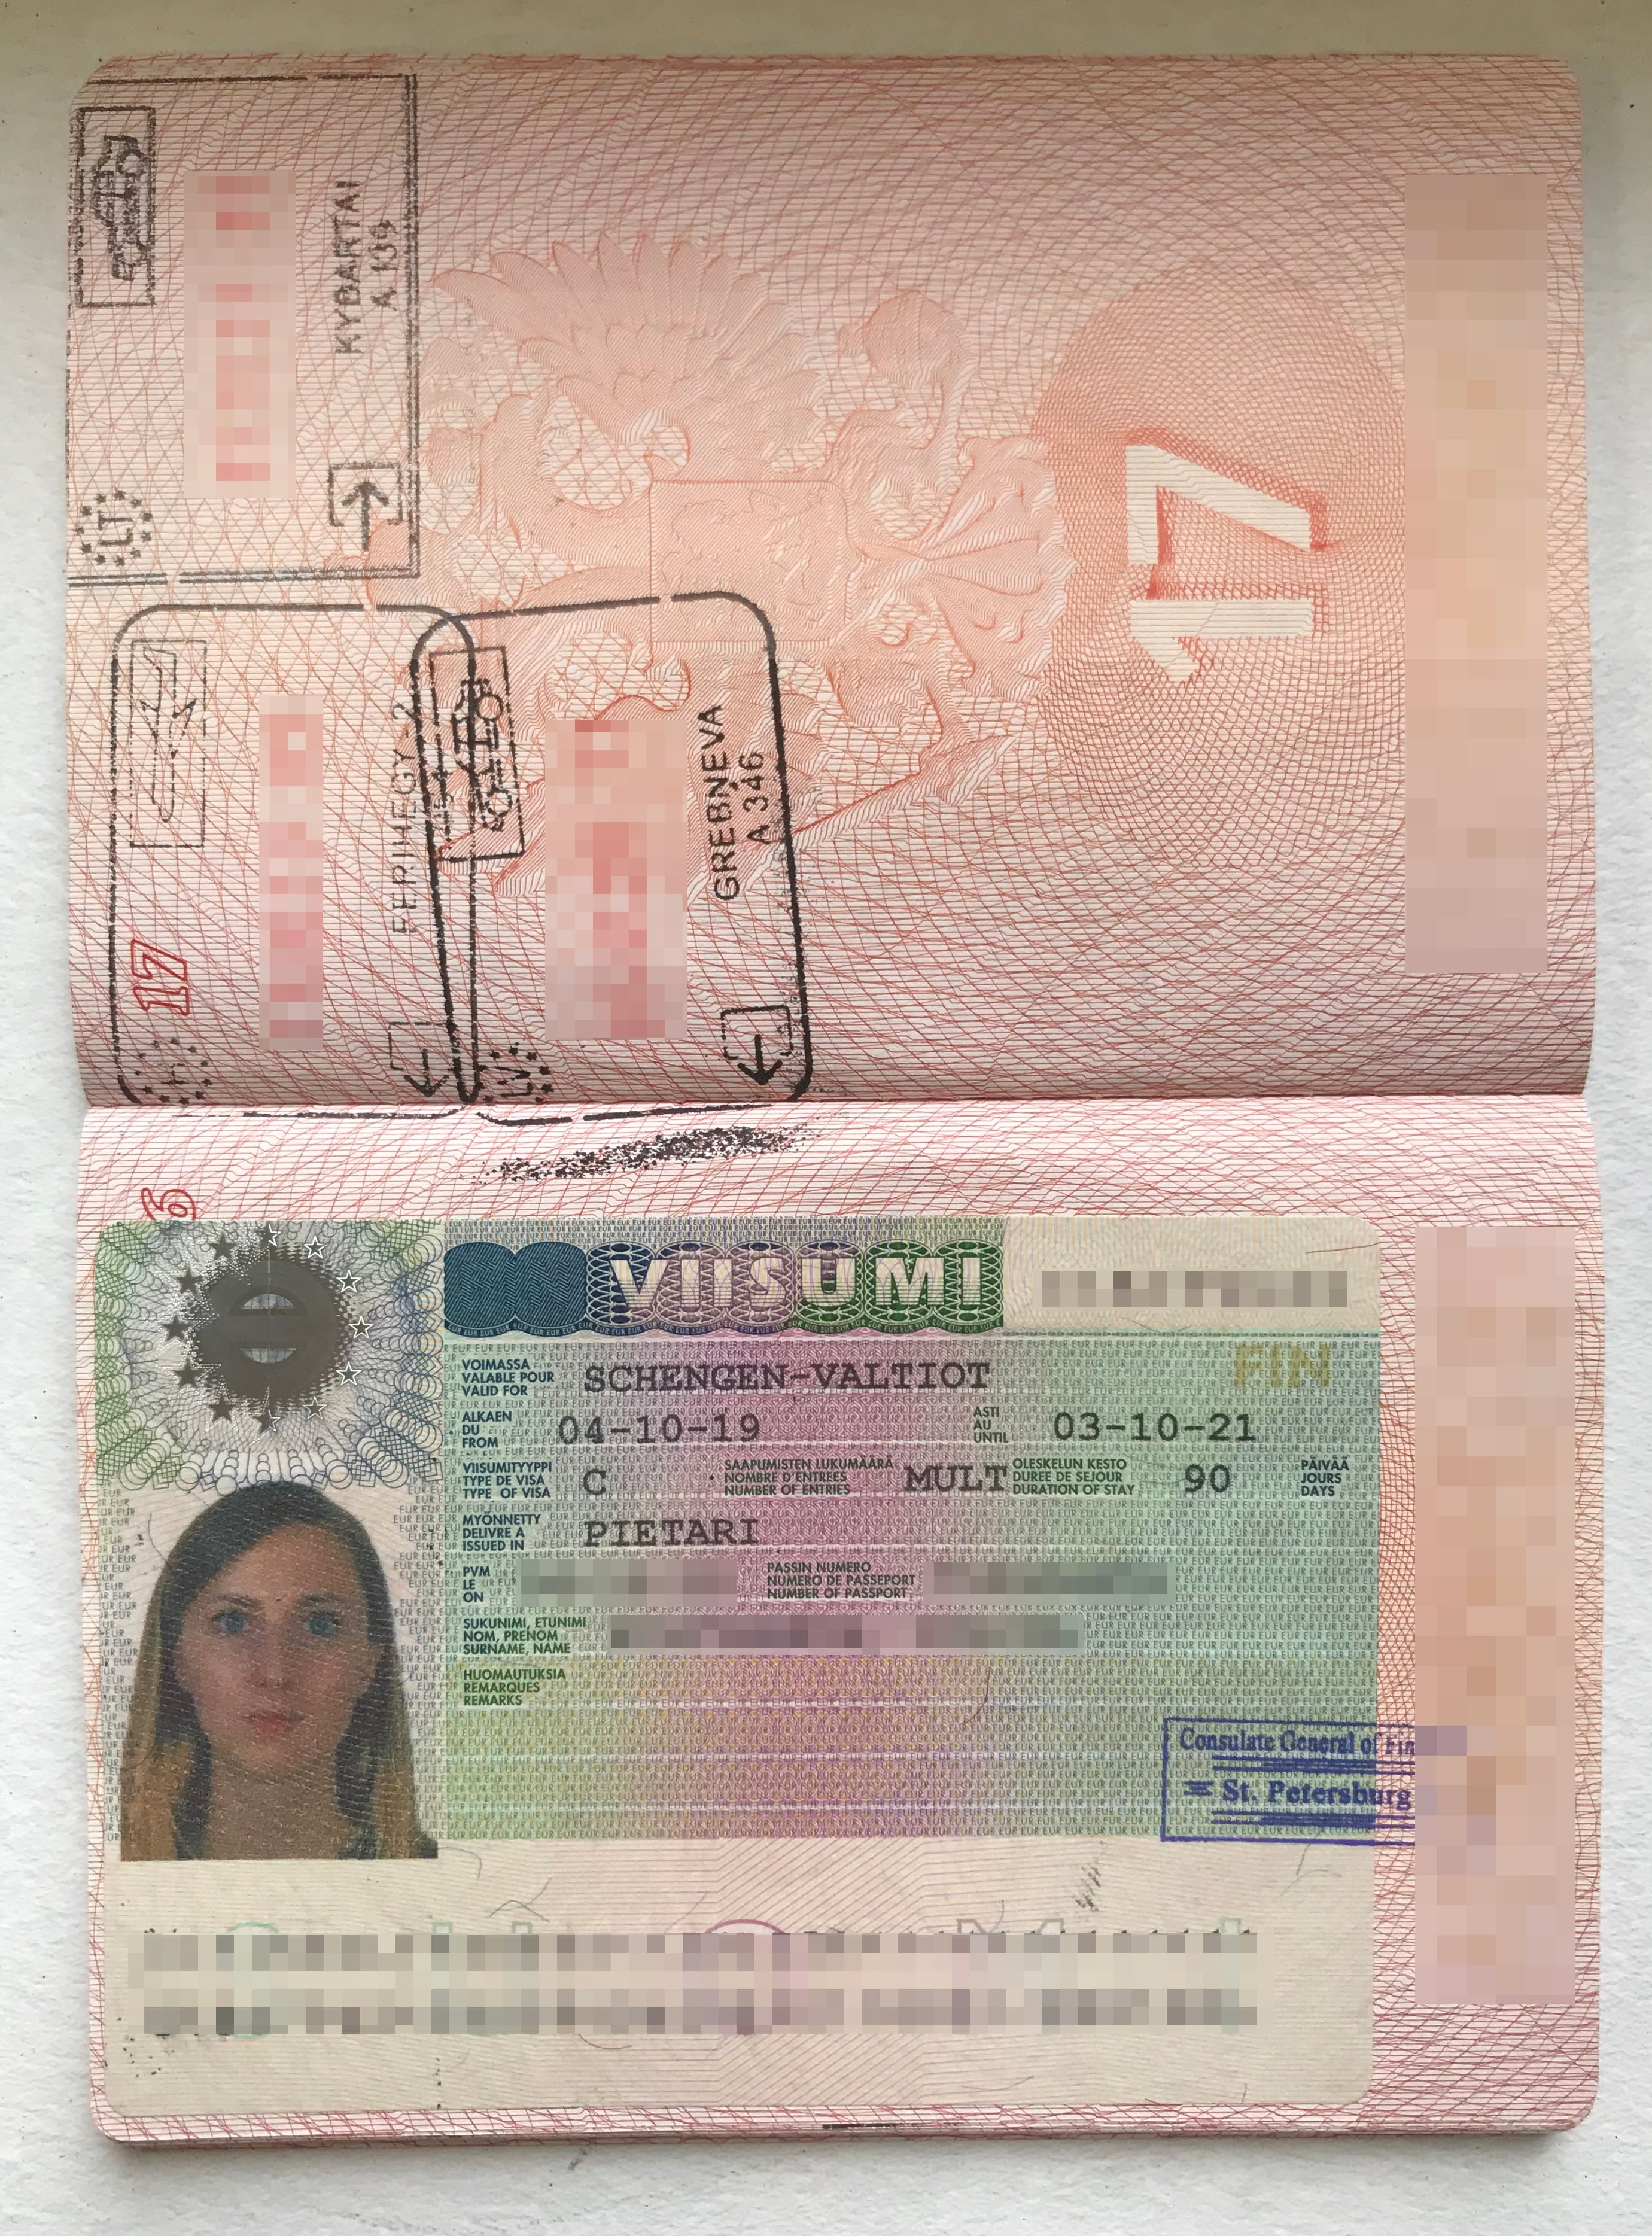 Мне выдали визу на два года